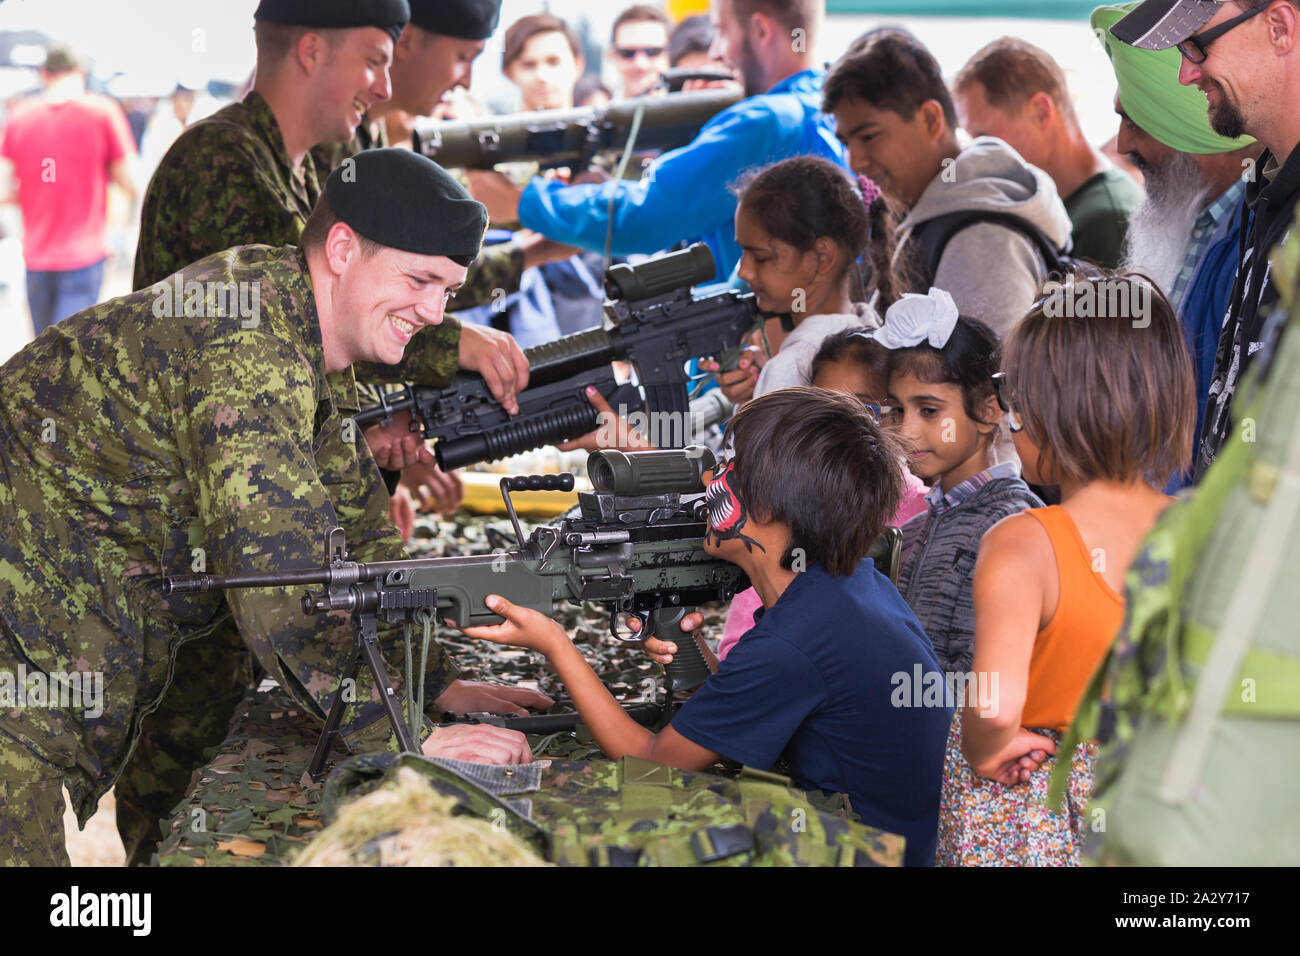 ABBOTSFORD, BC, KANADA - 11. AUG 2019: Ein Soldat der kanadischen Streitkräfte zeigt Kindern auf der Abbotsford International Airshow ein automatisches Gewehr. Stockfoto